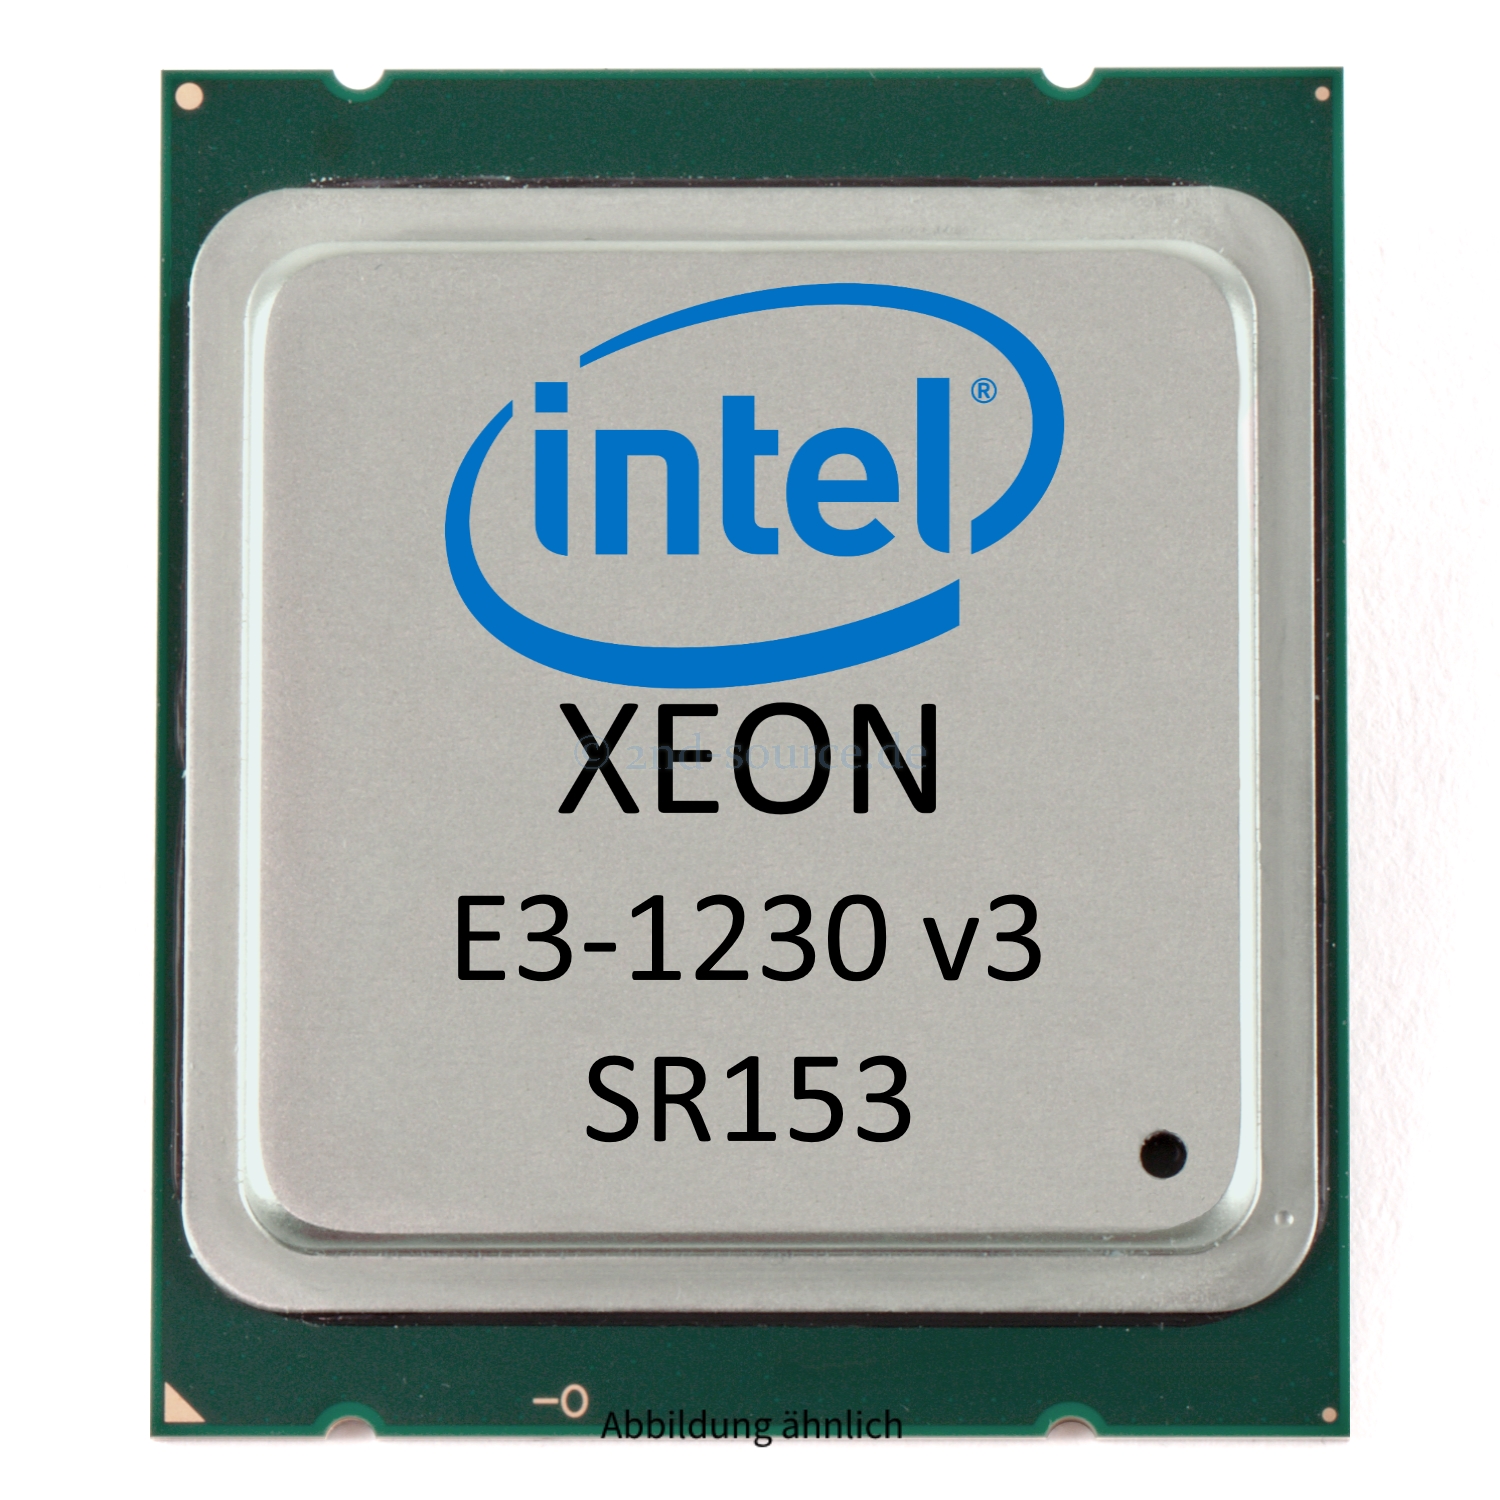 Intel Xeon E3-1230 v3 3.33GHz 8MB 4-Core CPU 80W SR153 CM8064601467202